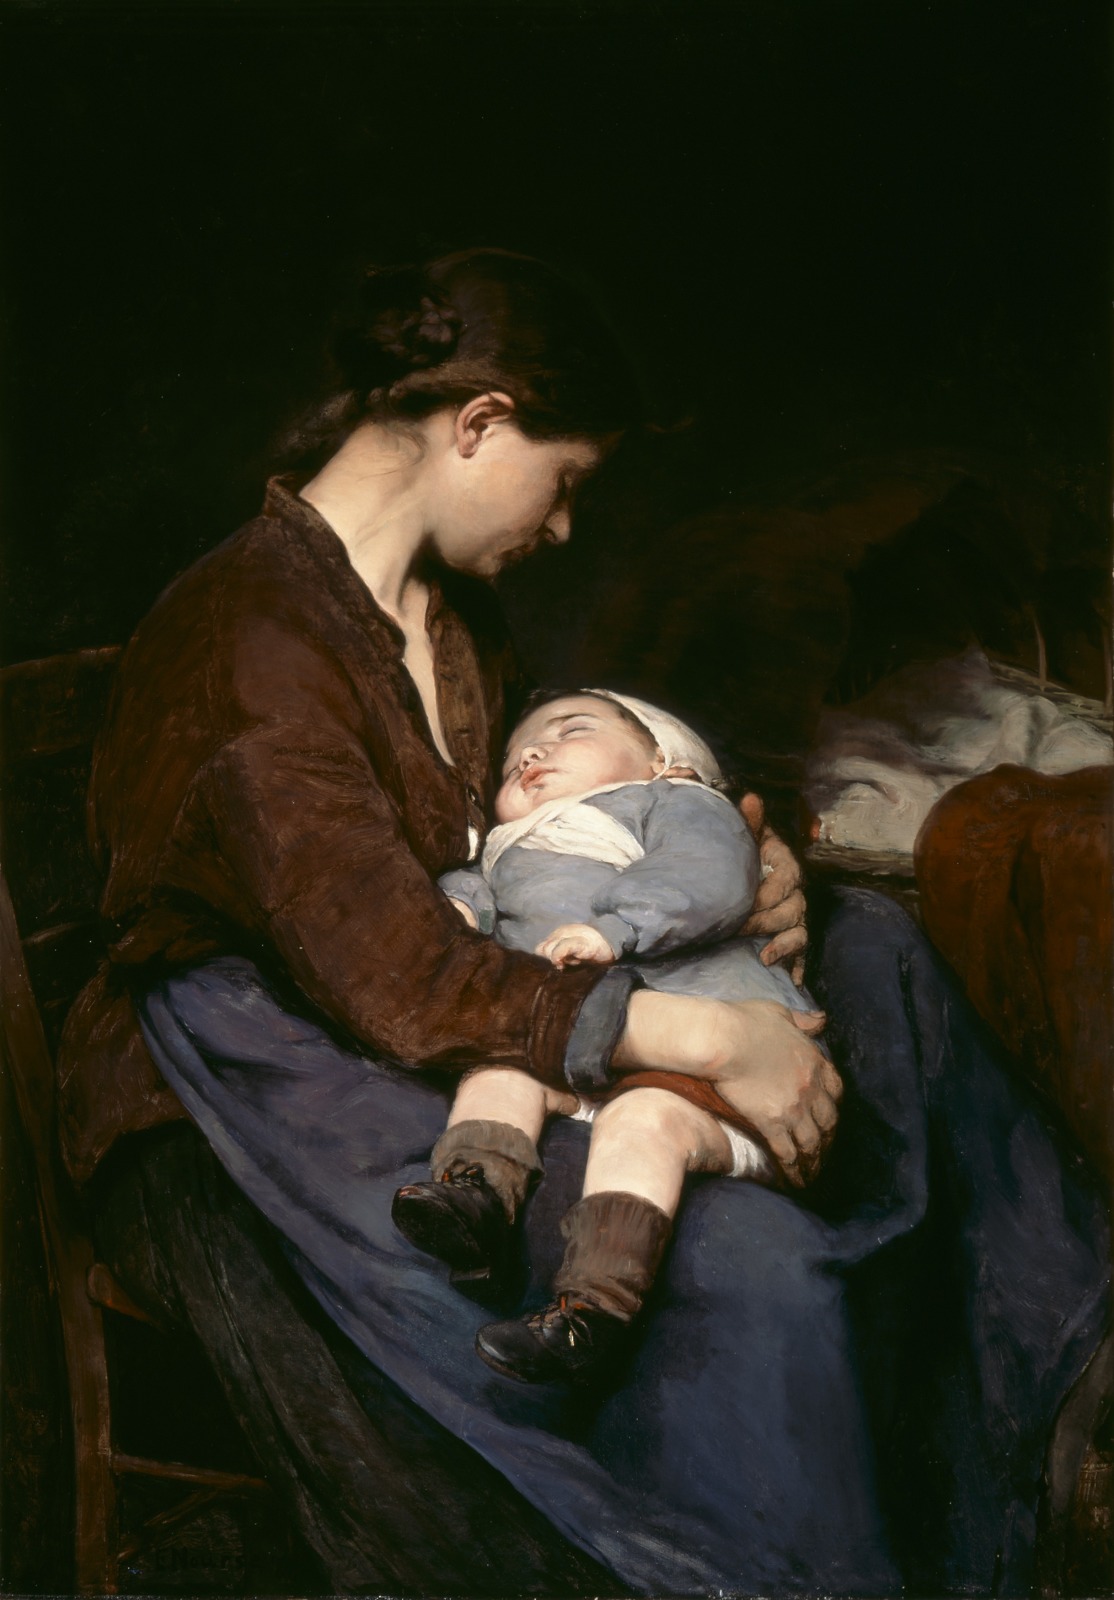 Bir Anne by Elizabeth Nourse - 1888 - 115.6 x 81.3 cm 